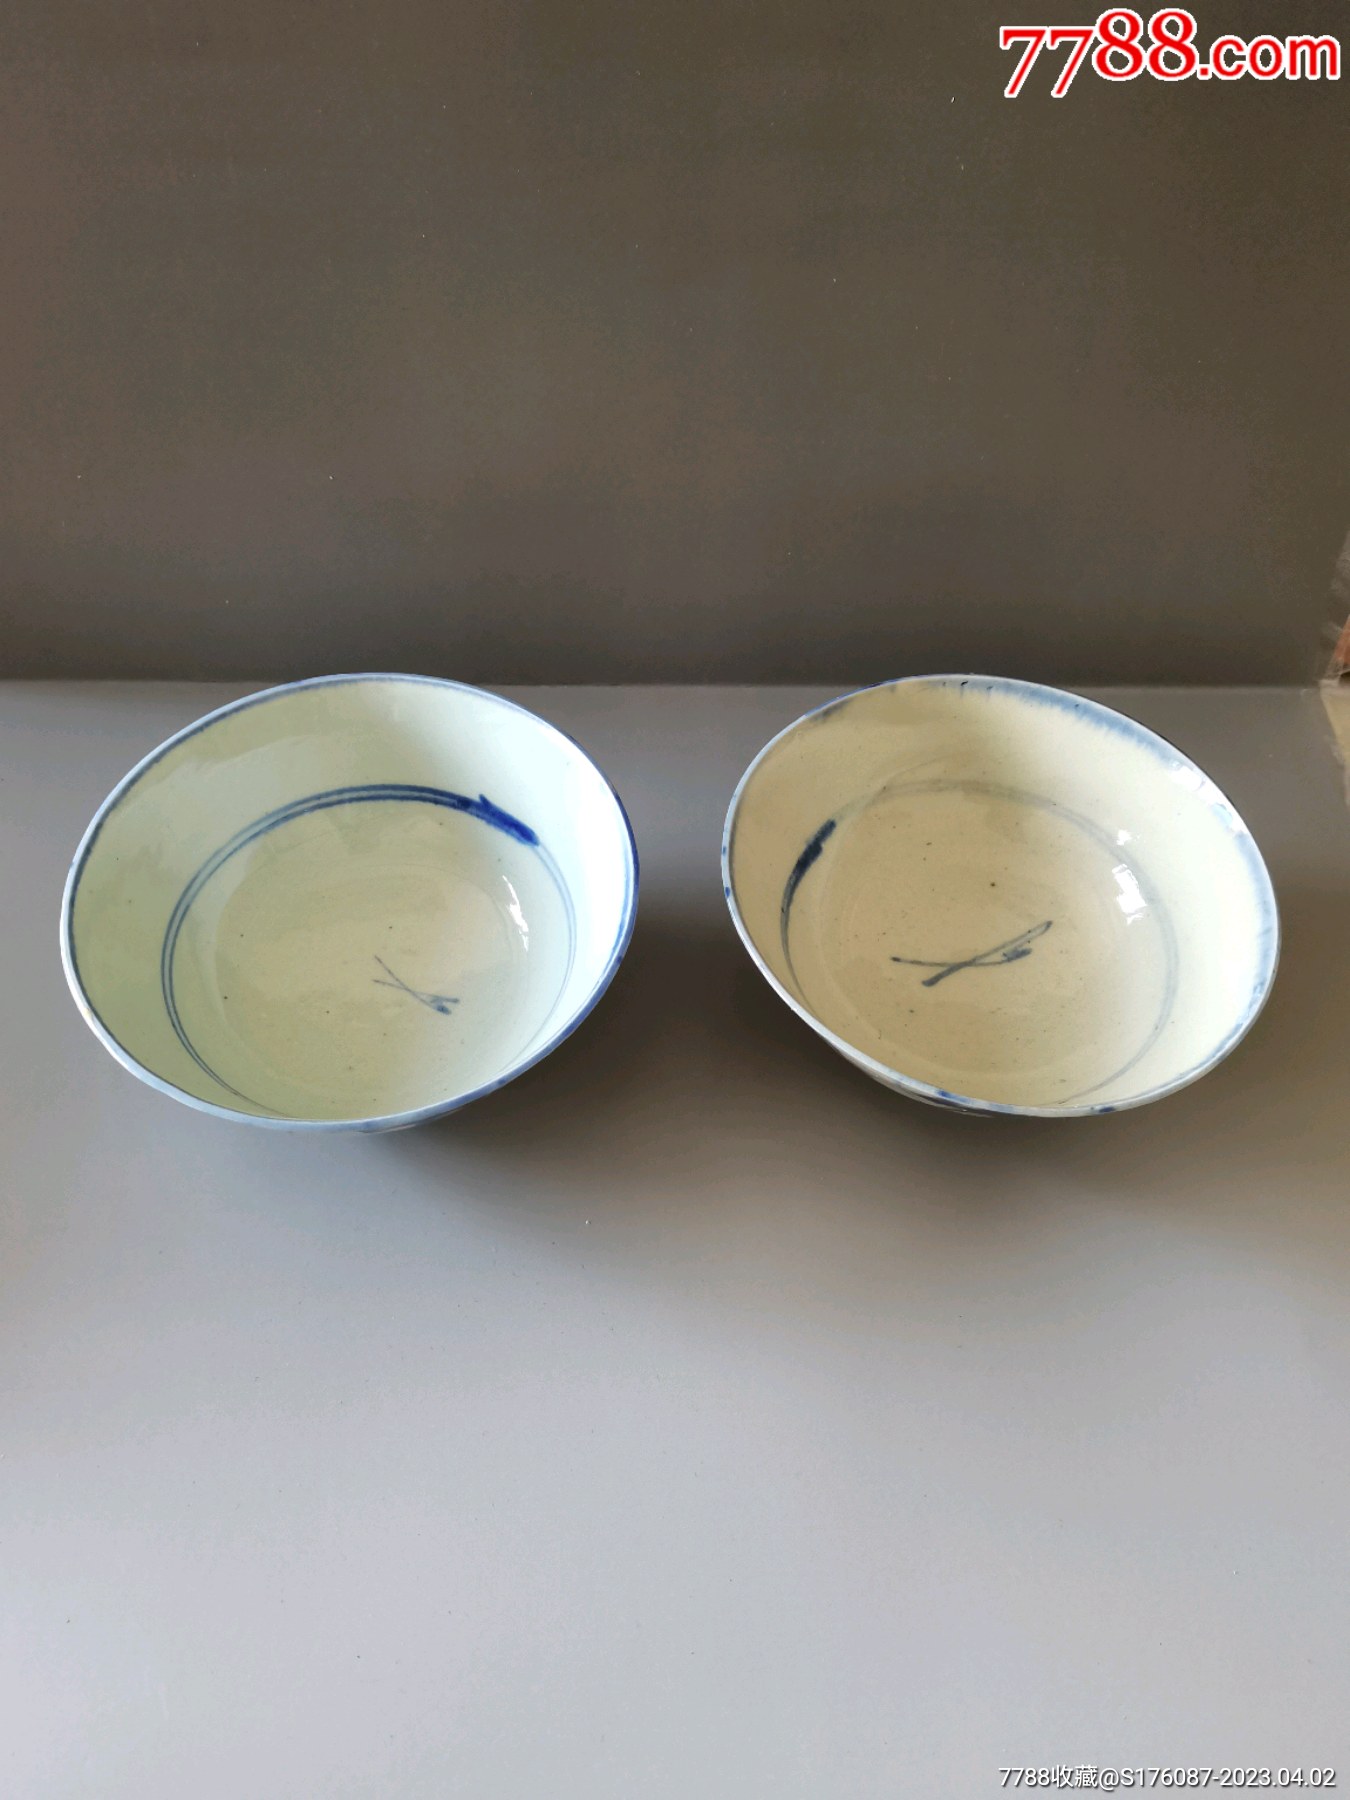 北宋景德镇窑青白釉墩式碗-青白瓷精品-图片